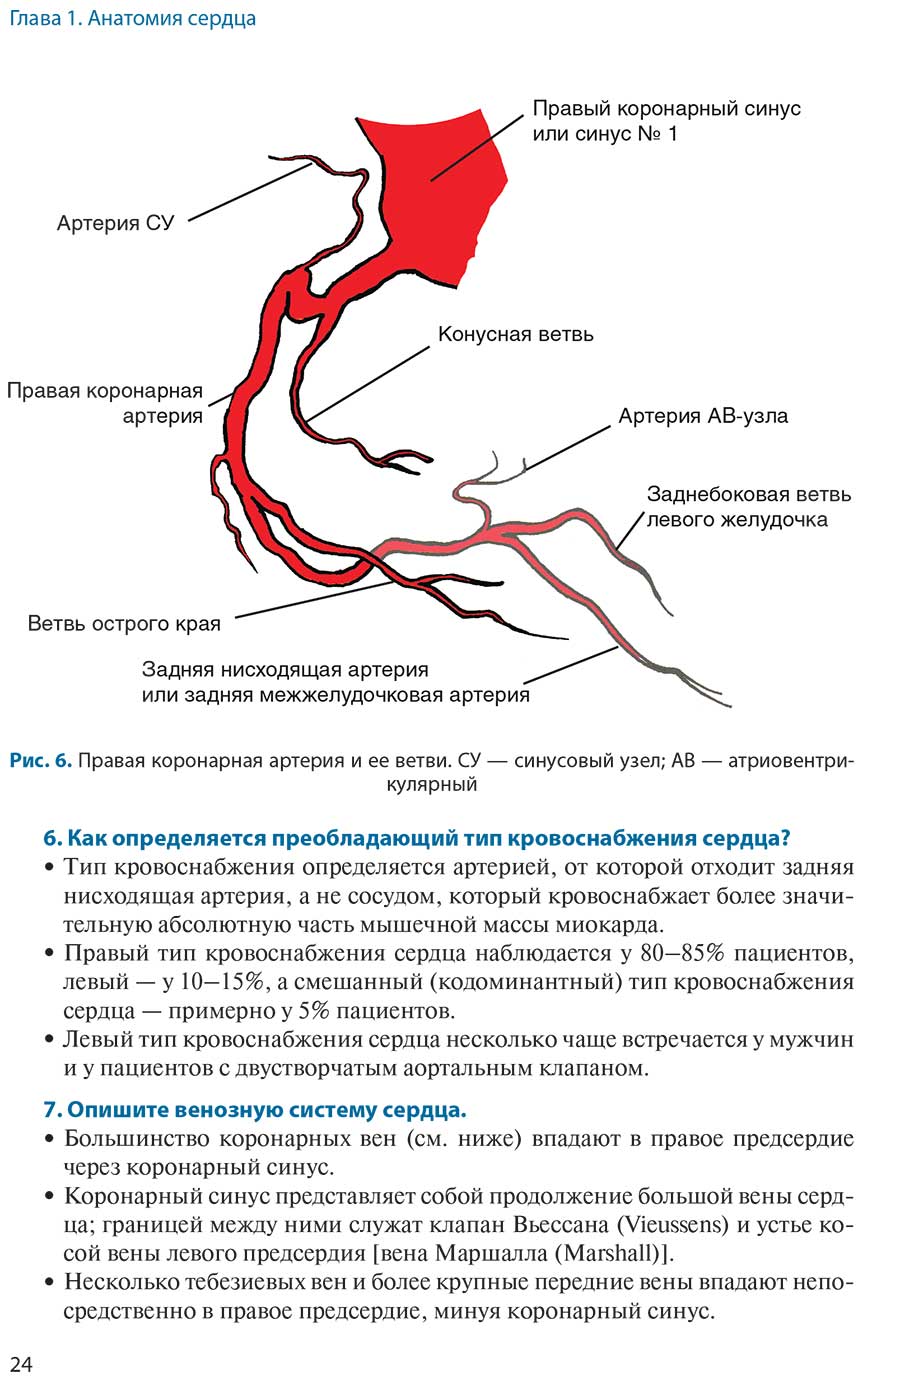 Рис. б. Правая коронарная артерия и ее ветви